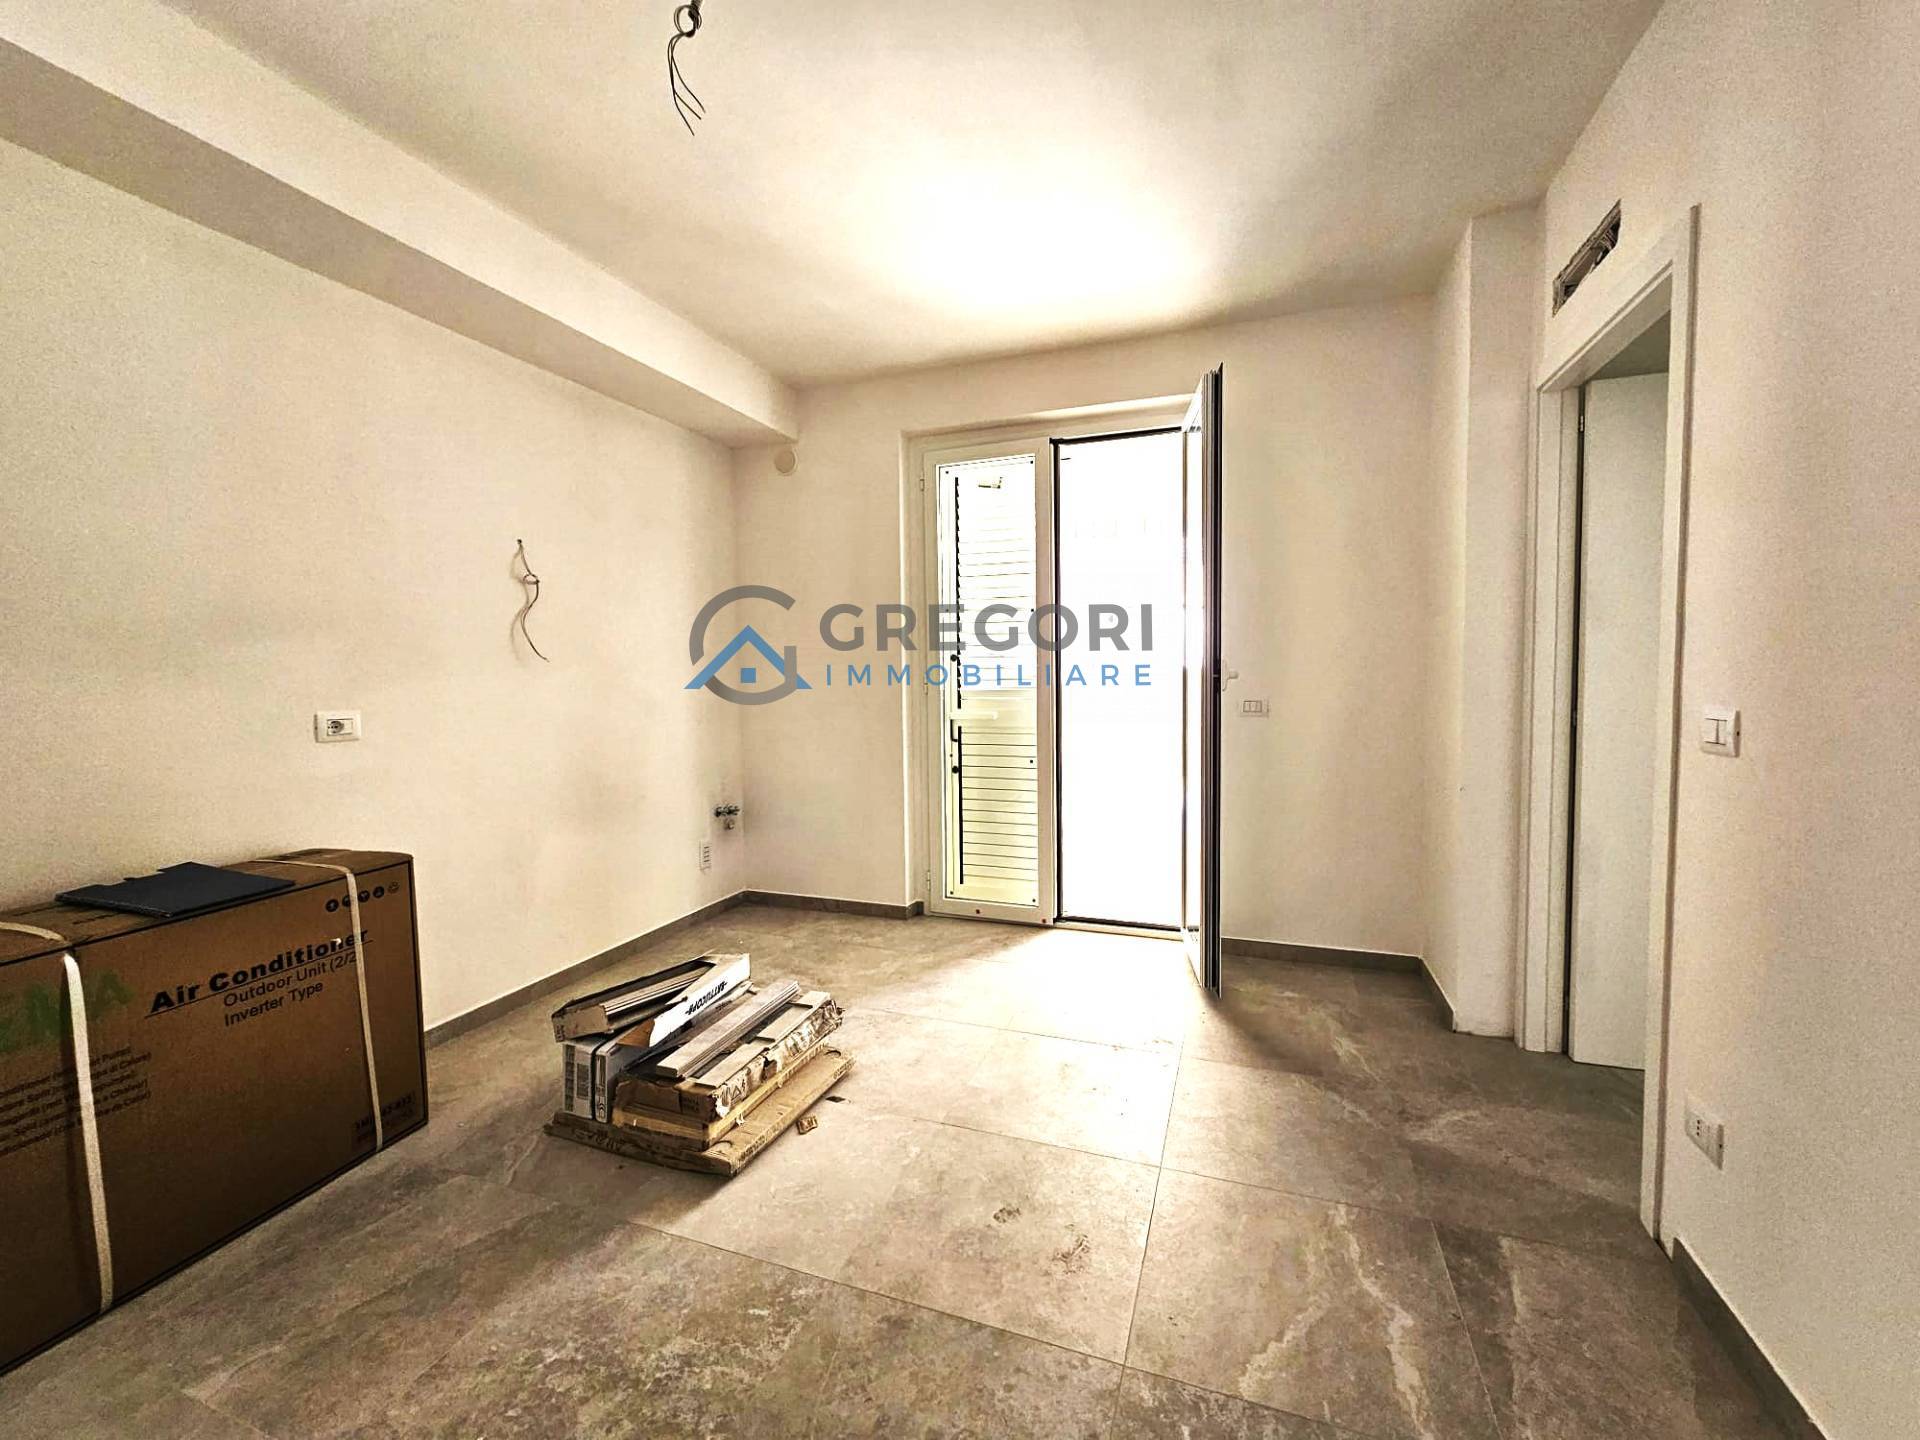 Appartamento in vendita a Tortoreto, 3 locali, prezzo € 159.000 | PortaleAgenzieImmobiliari.it